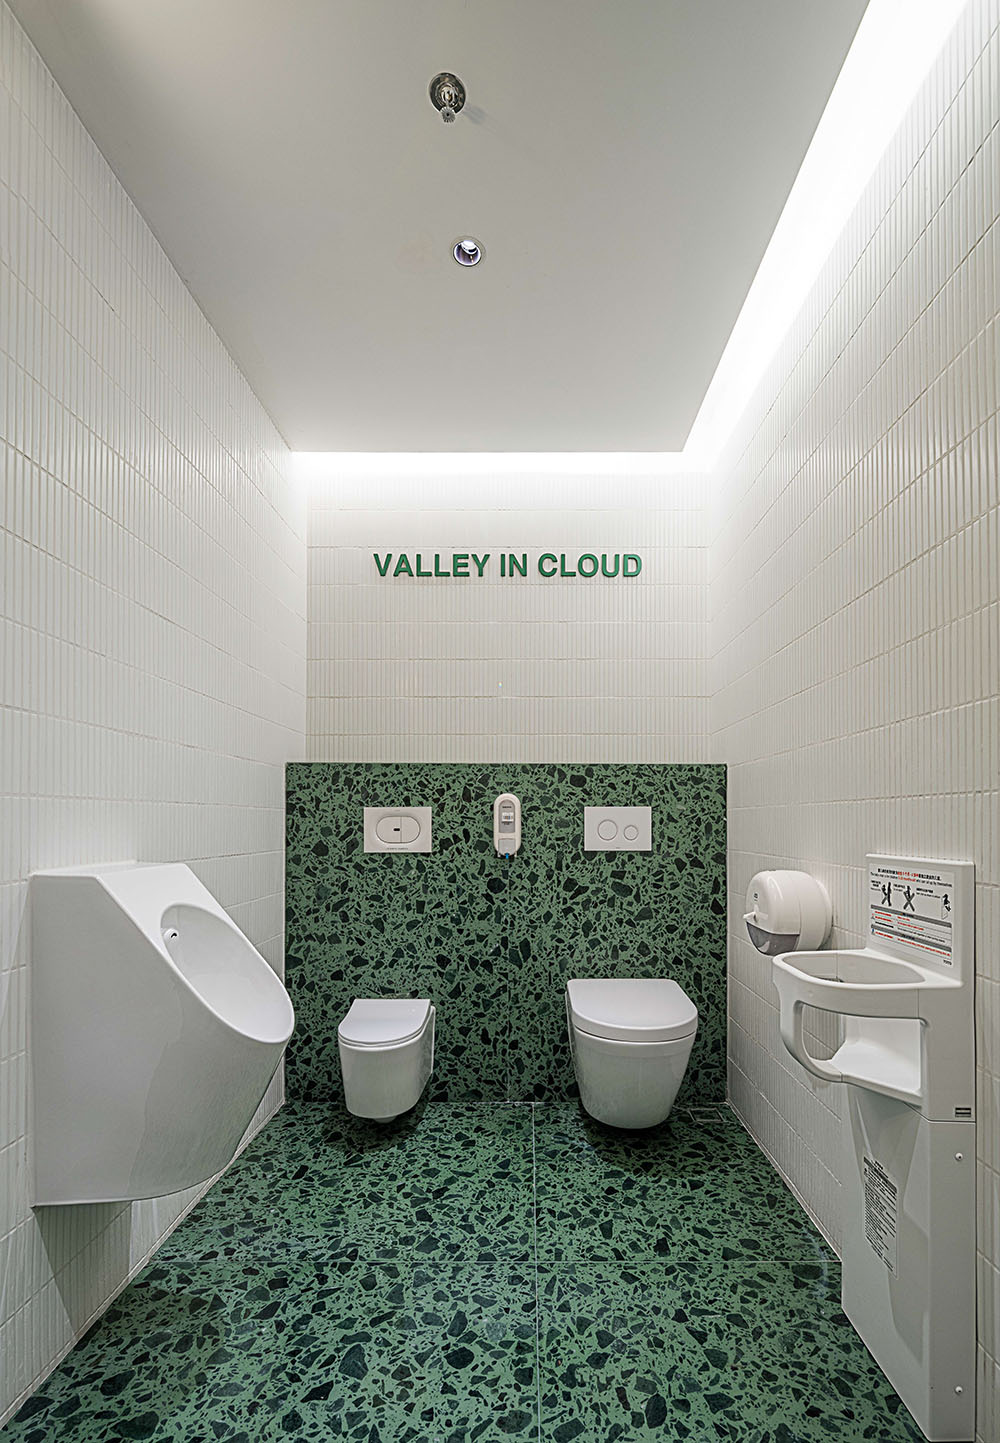 公共空間設計,衛生間設計,商場衛生間設計,商場衛生間裝修,公共廁所設計,公共衛生間設計,上海,壁上叢林交叉性別衛生間,佑向設計